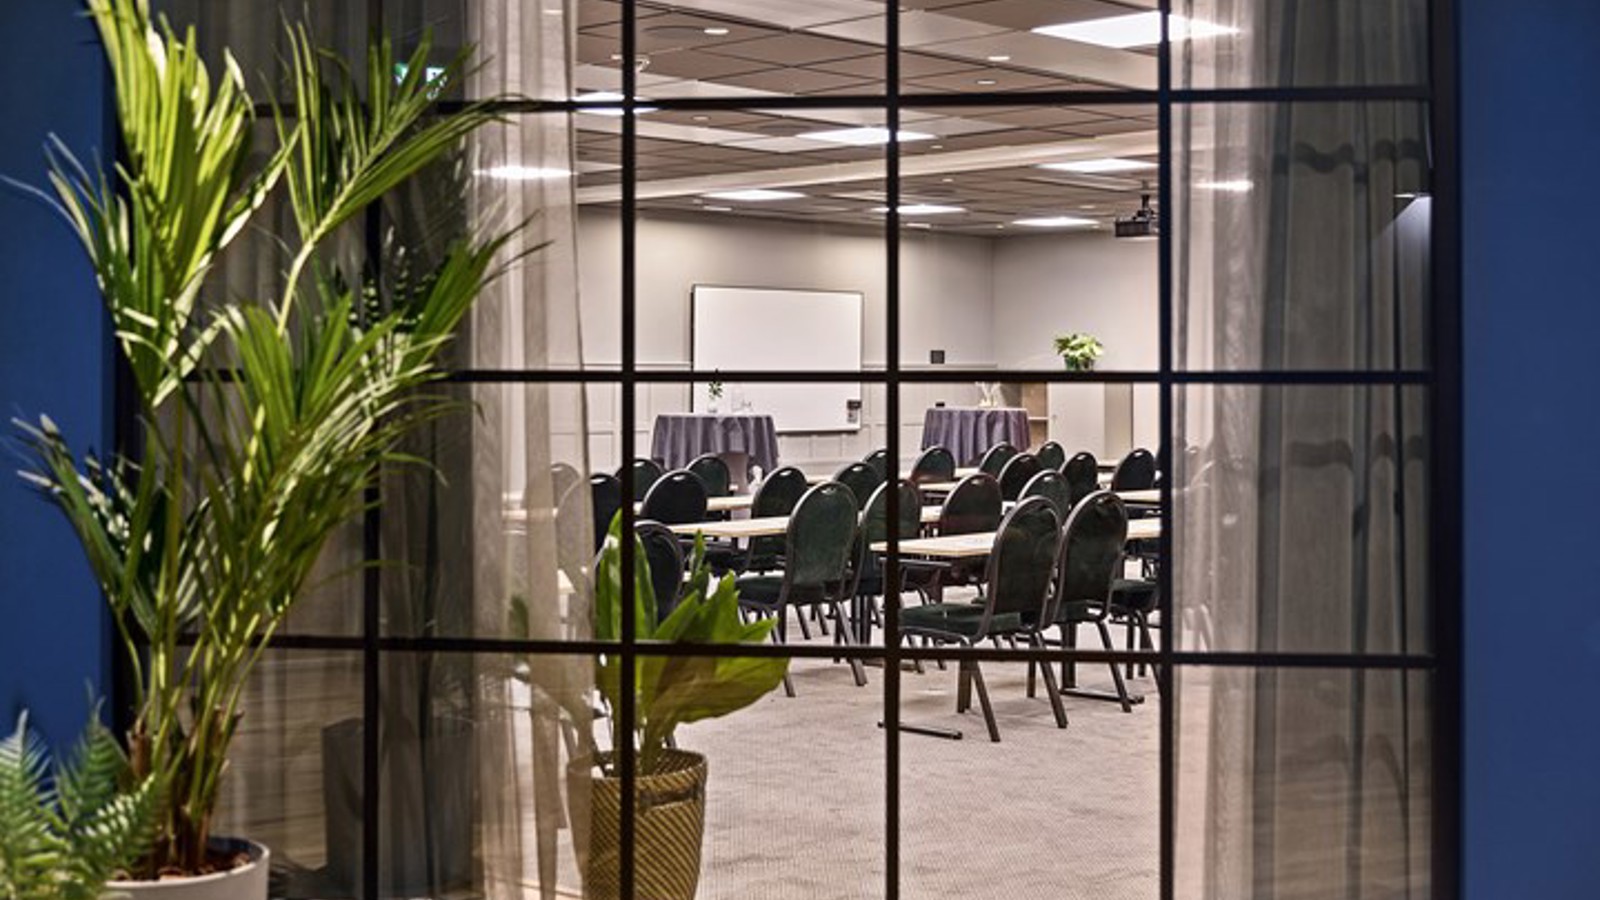 Konferensrum med stolar fotat genom ett fönster